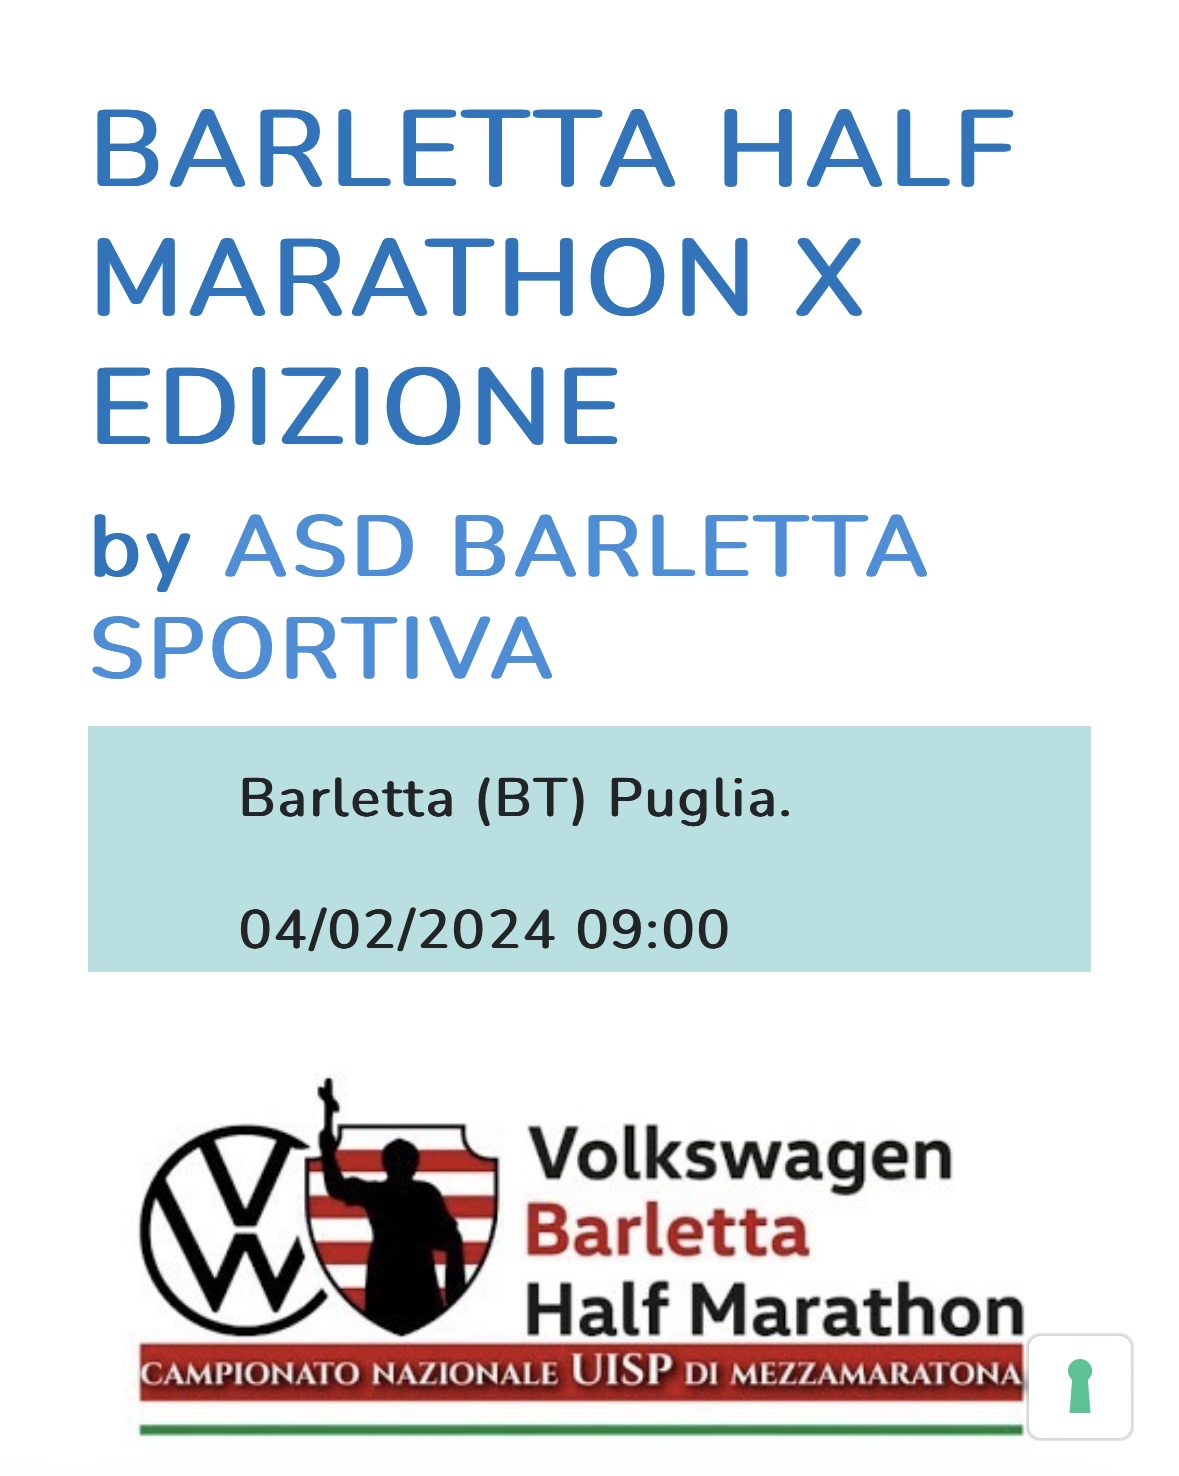 Volkswagen Barletta half marathon